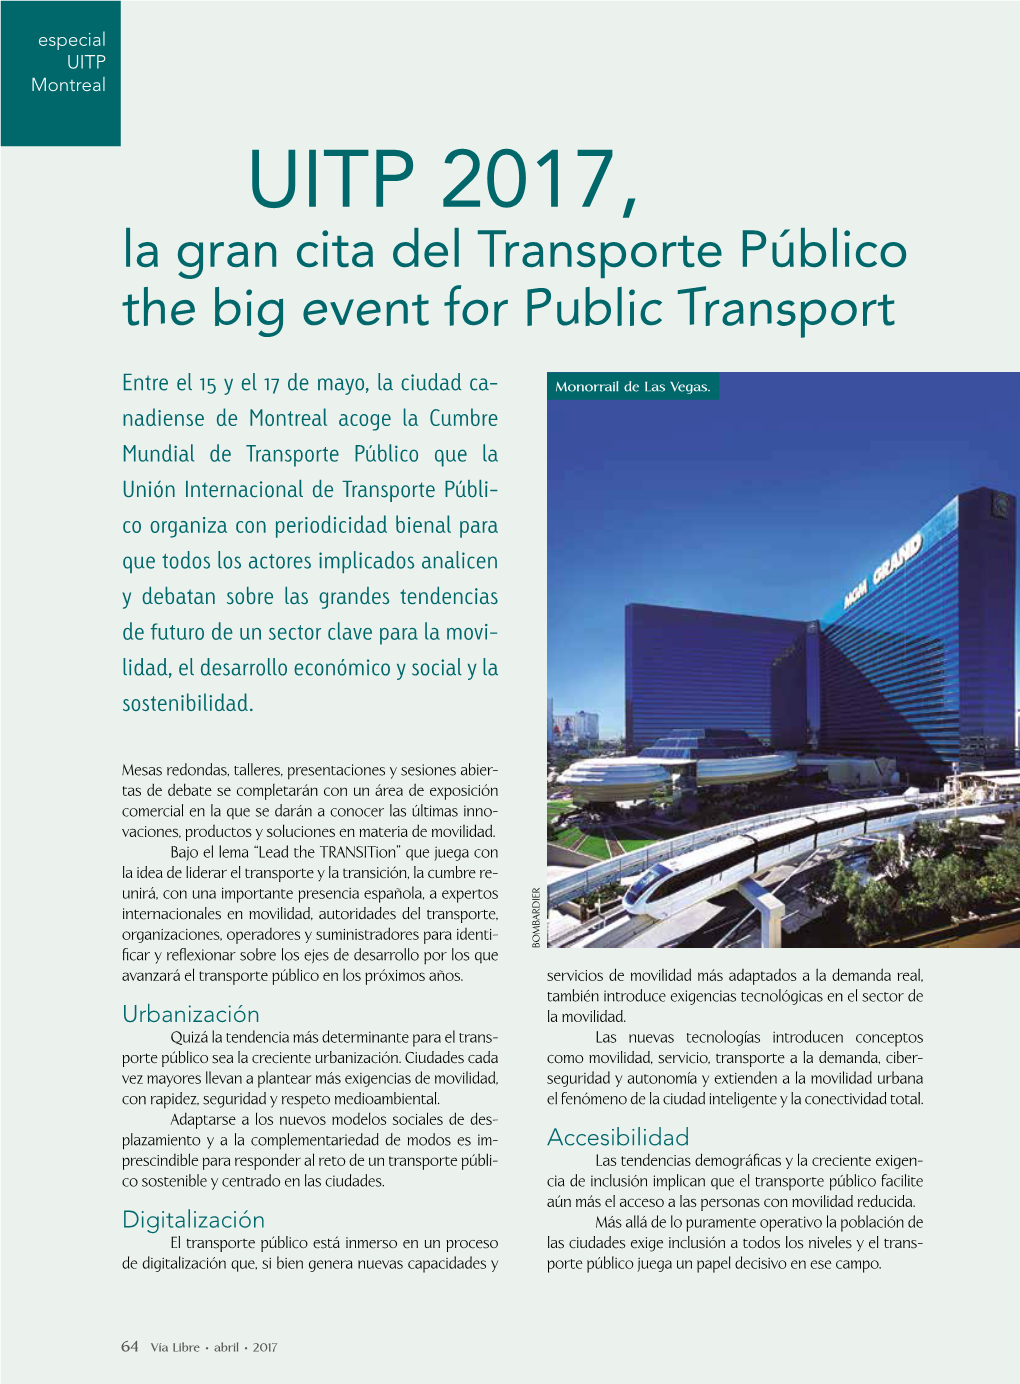 UITP 2017, La Gran Cita Del Transporte Público the Big Event for Public Transport